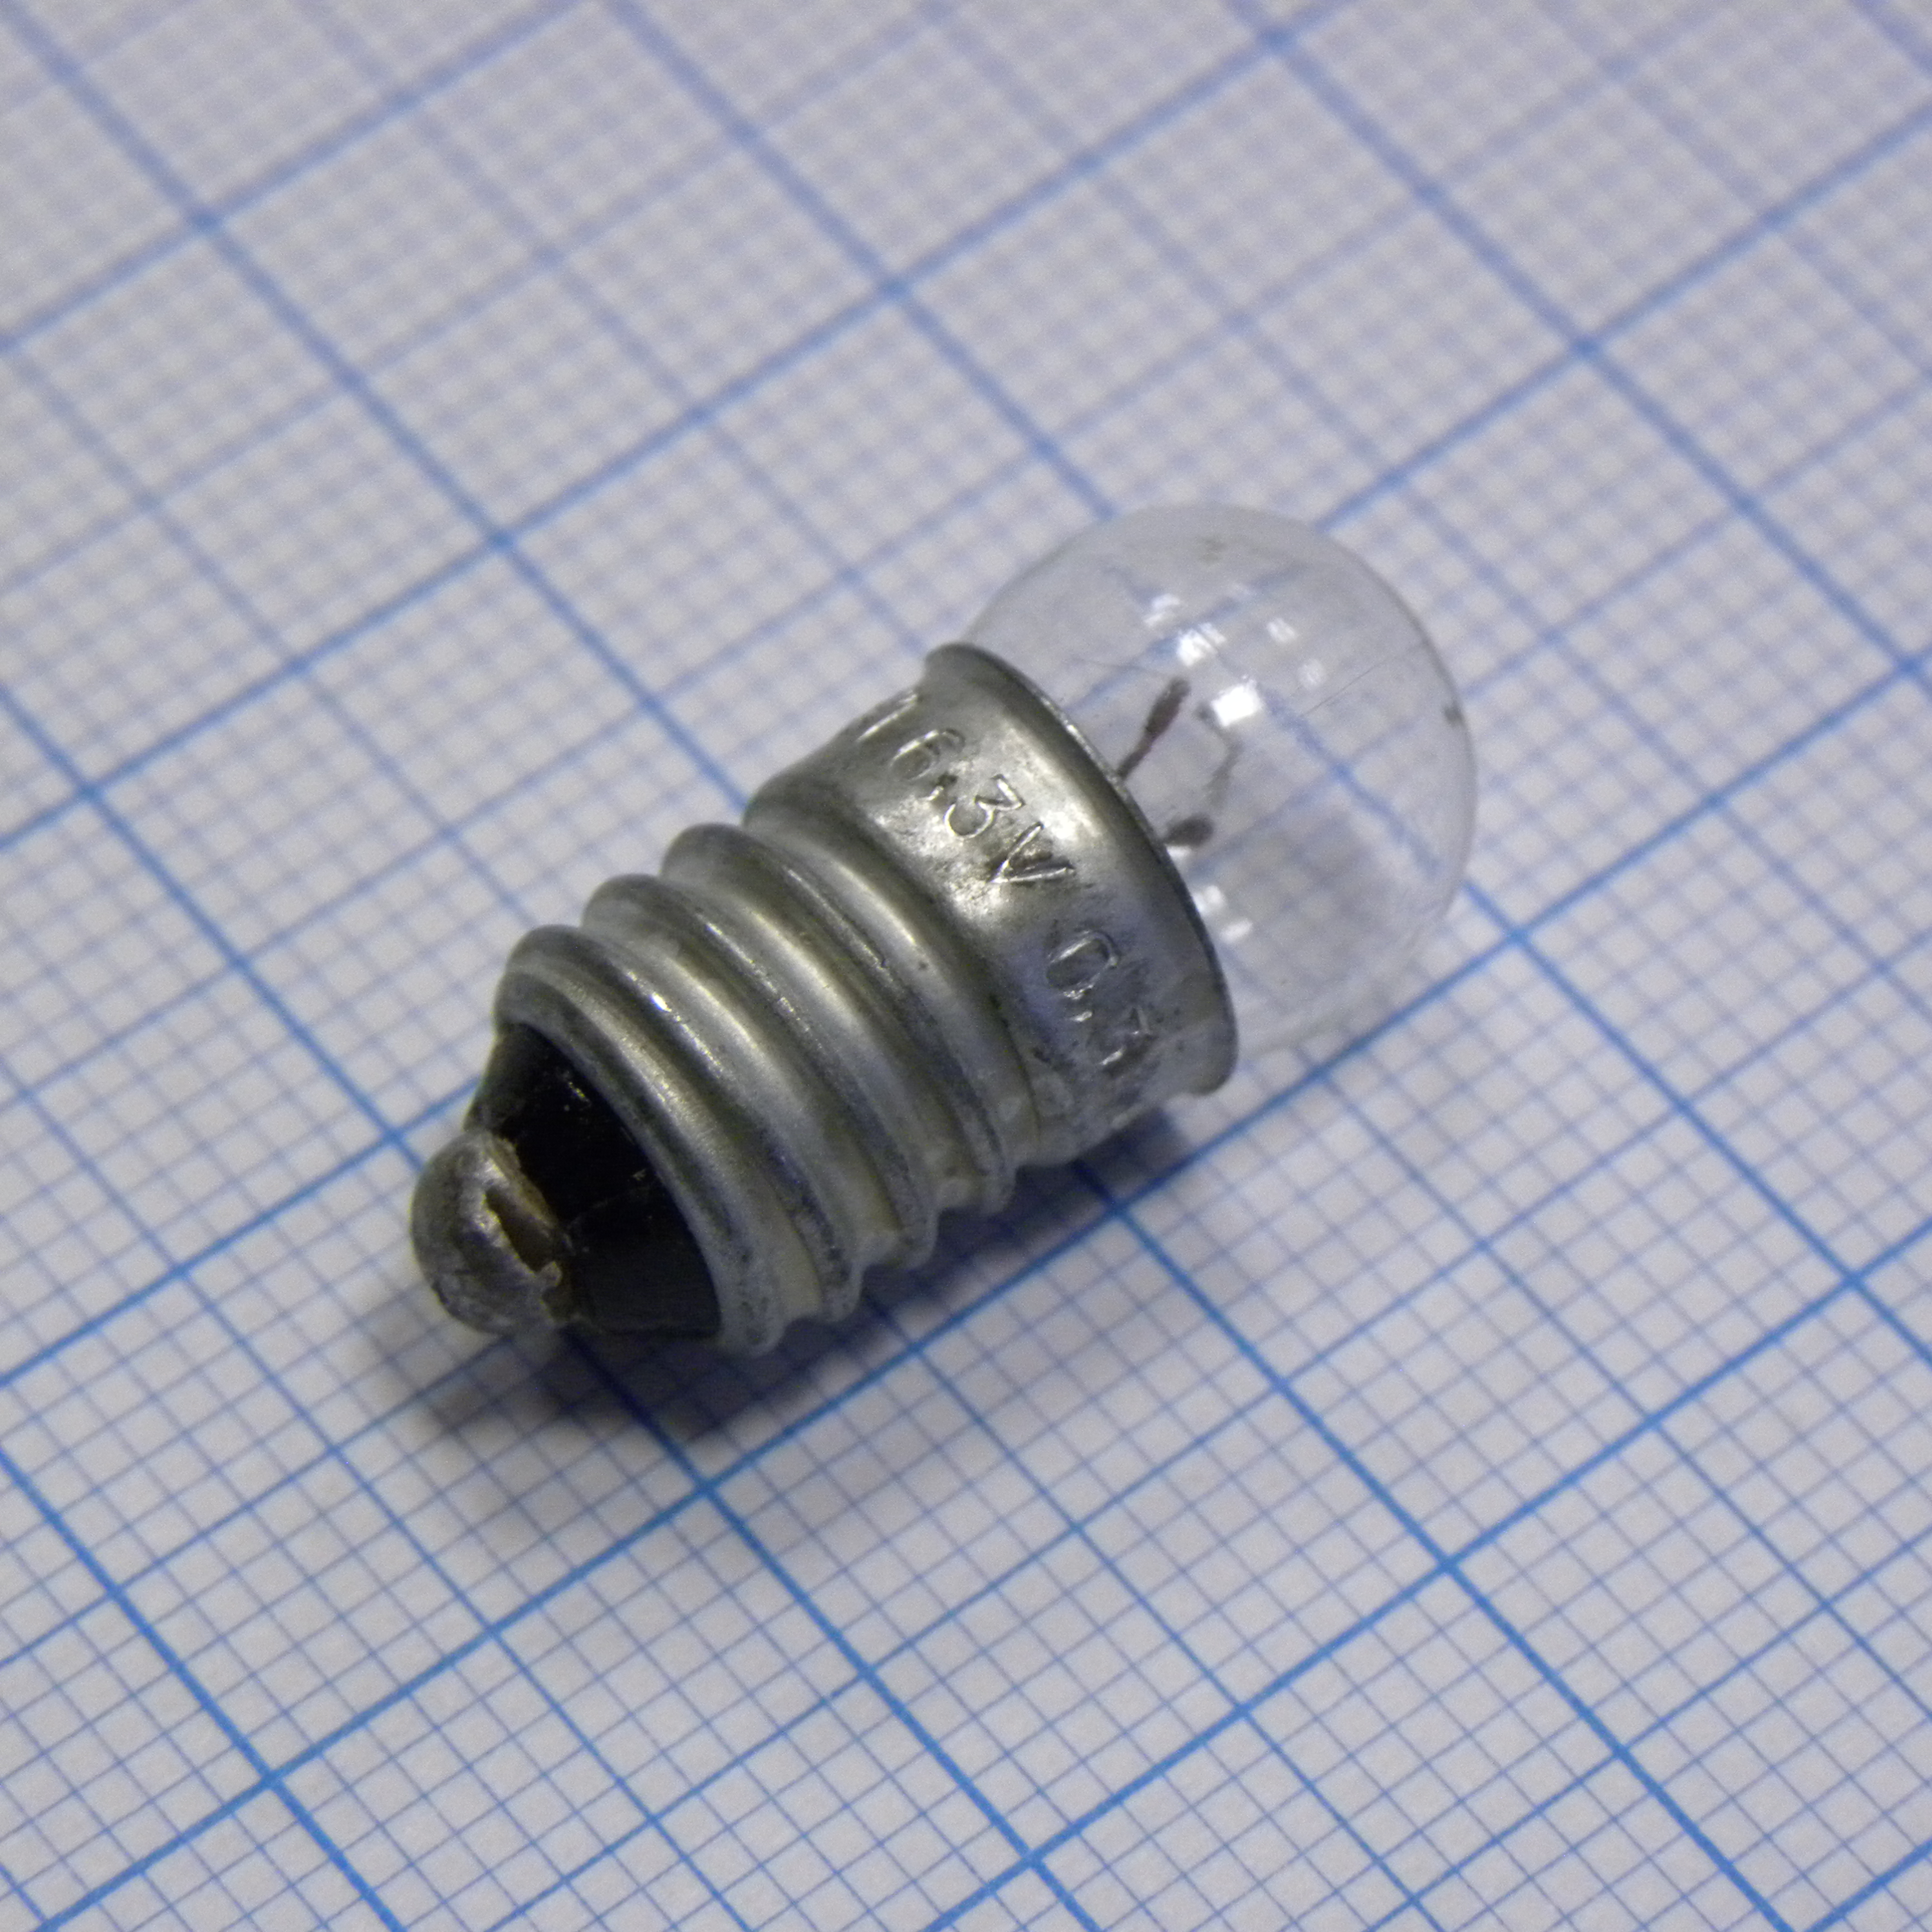 Лампочки на 3 5 вольт. Мн6.3-0.3, лампа накаливания (6.3в, 0.3а), цоколь е10/13. Лампа накаливания мн 6,3-0,3 е10. Лампа накаливания (6.3в, 0.3а), цоколь е10/13 аналог светодиодная. Лампа накаливания мн лампа накаливания (6.3в, 0.3а), цоколь е10/13.